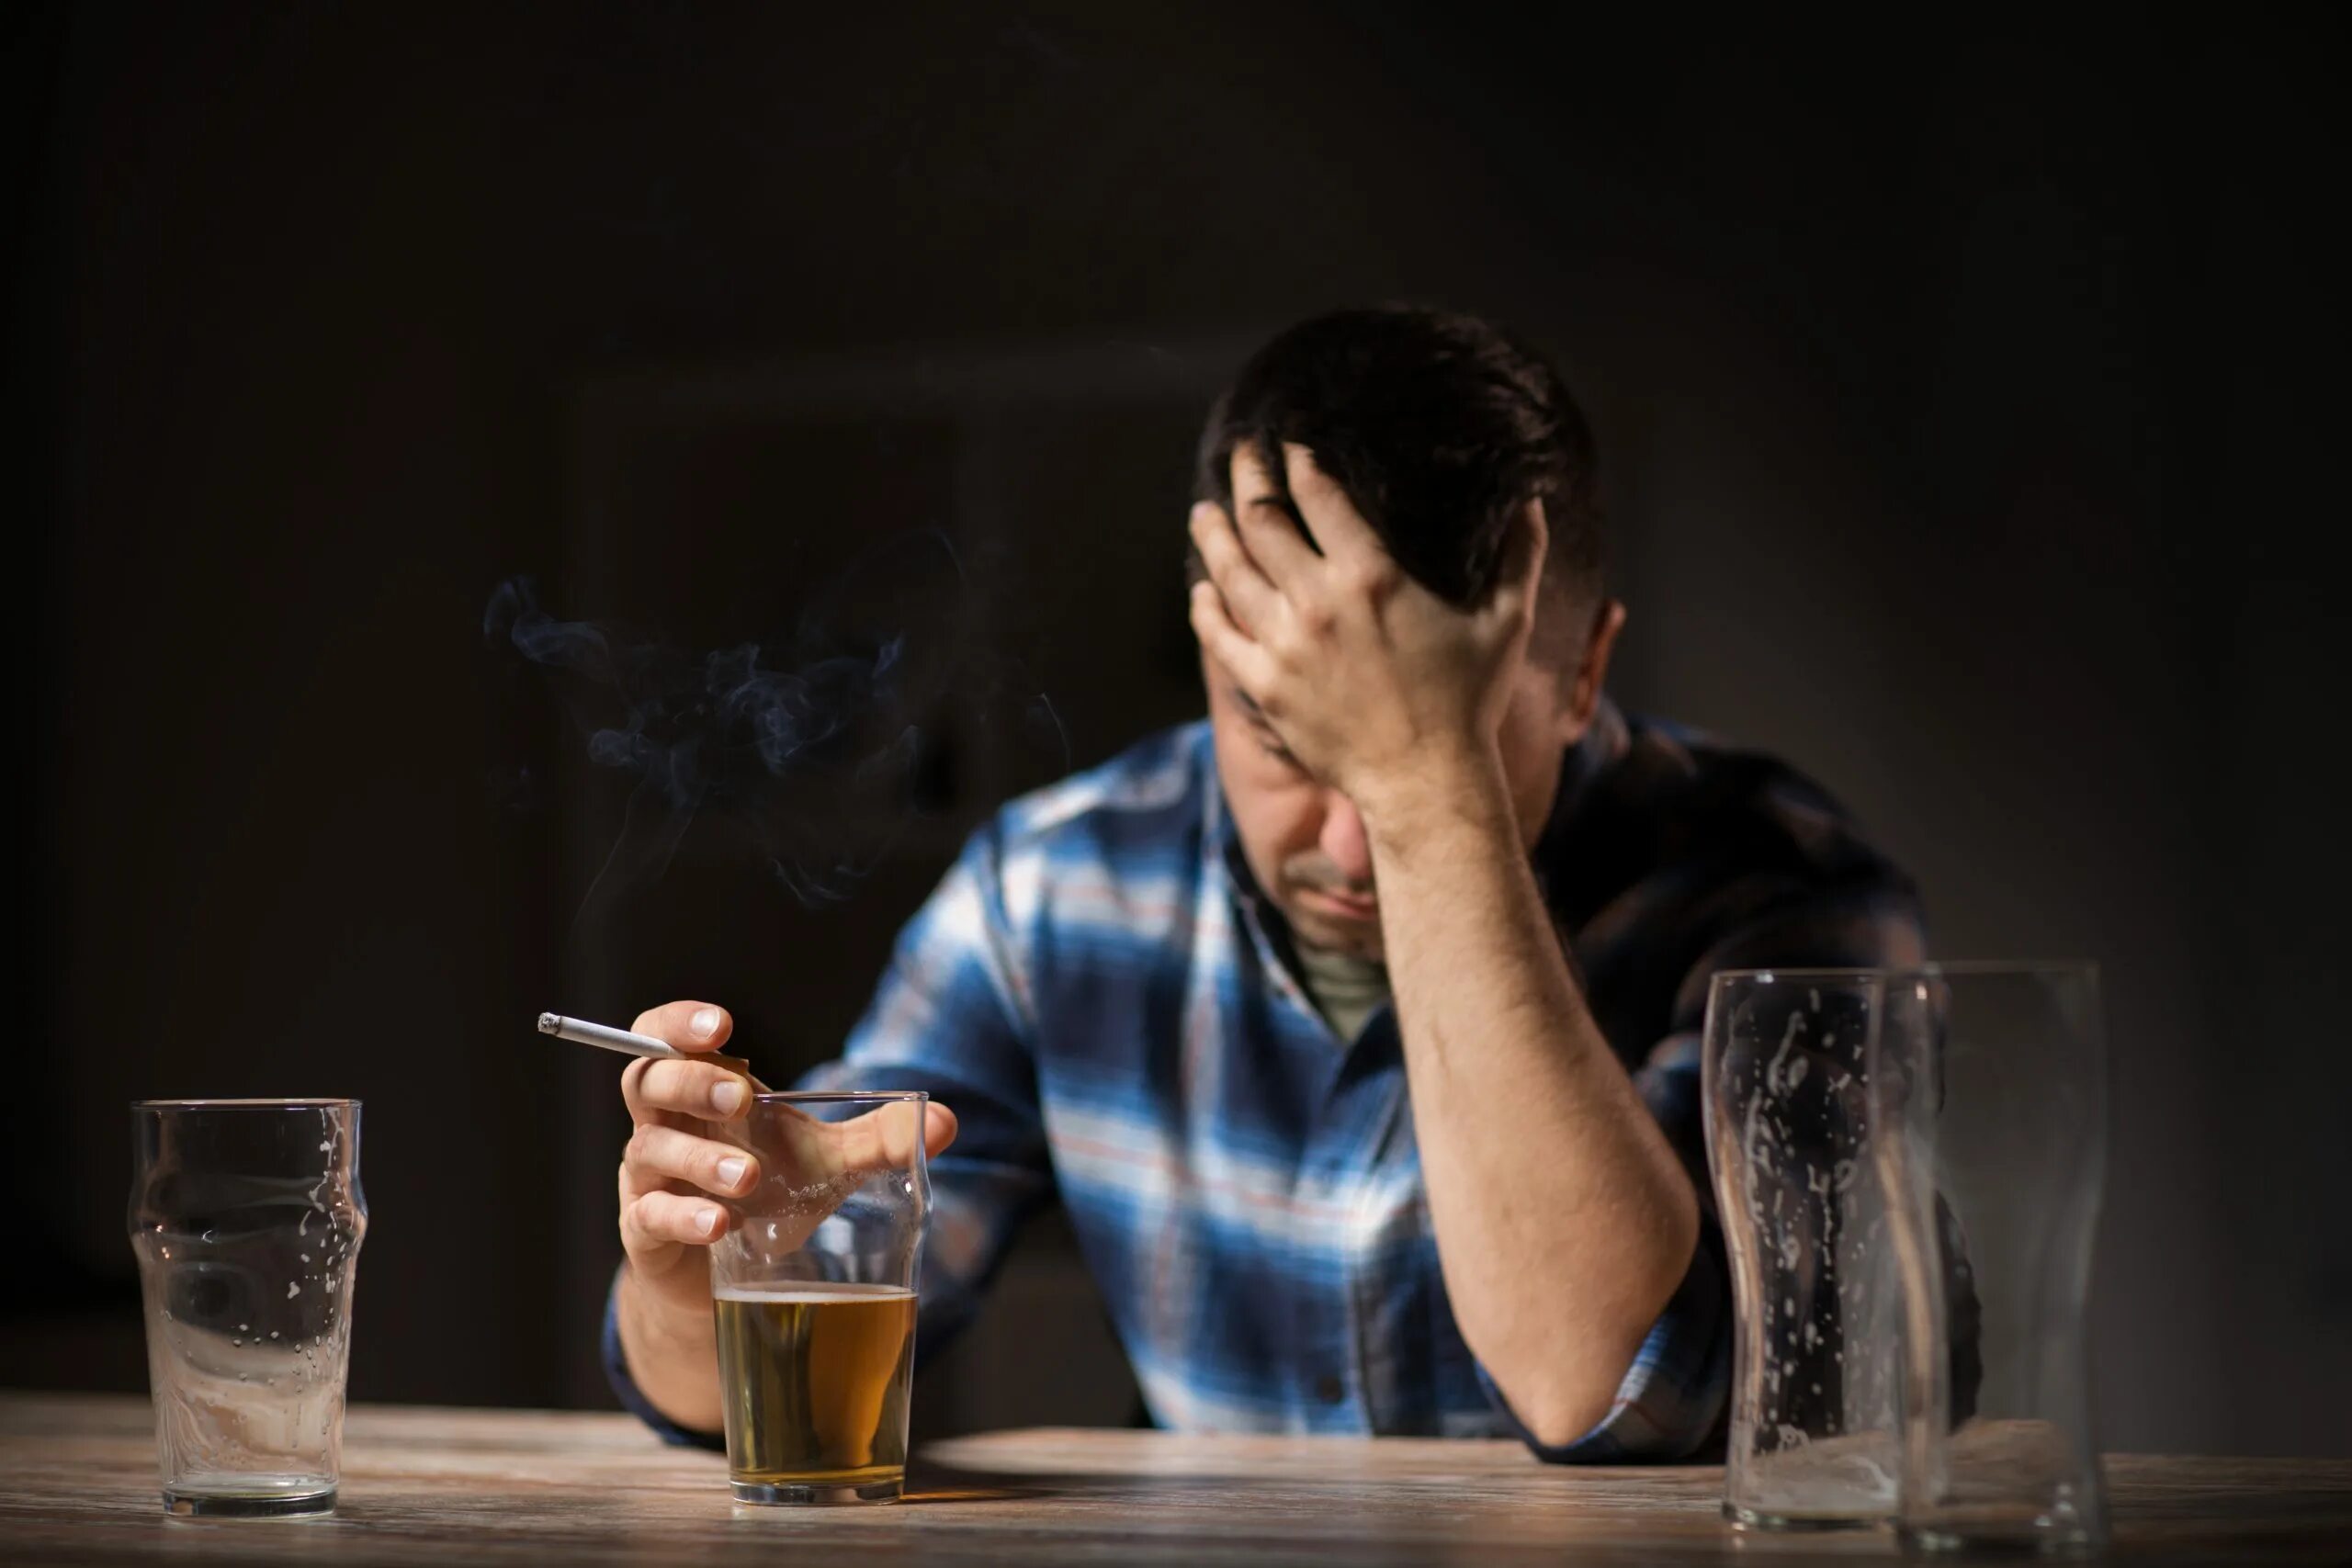 Картинка пьющий человек. Парень пьет. Курящий и пьющий человек. Алкоголизм.